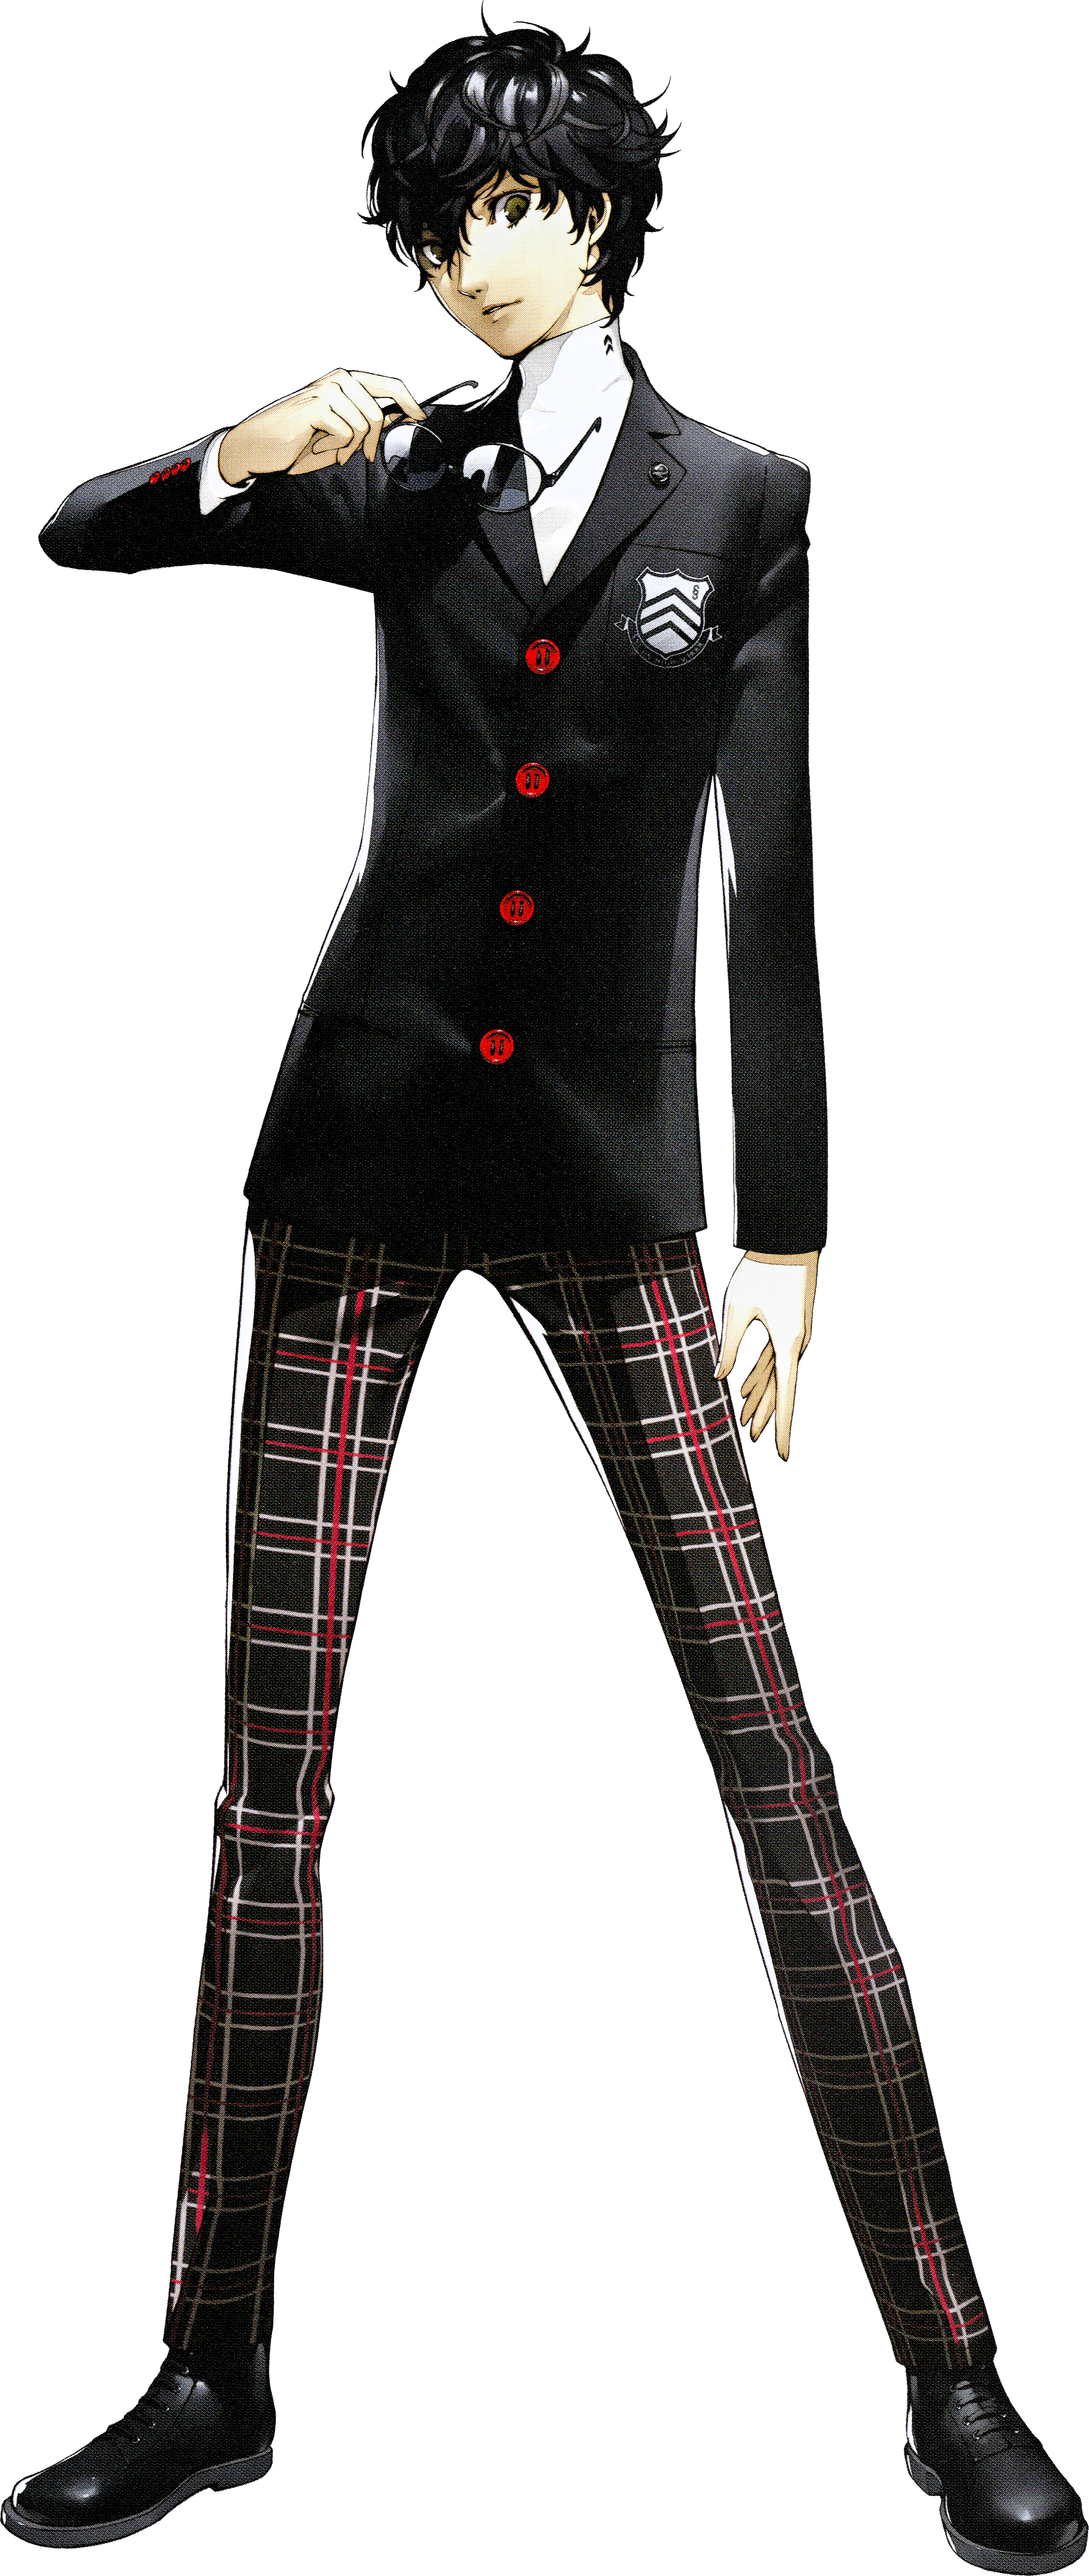 Persona 5 - Protagonist Minecraft Skin